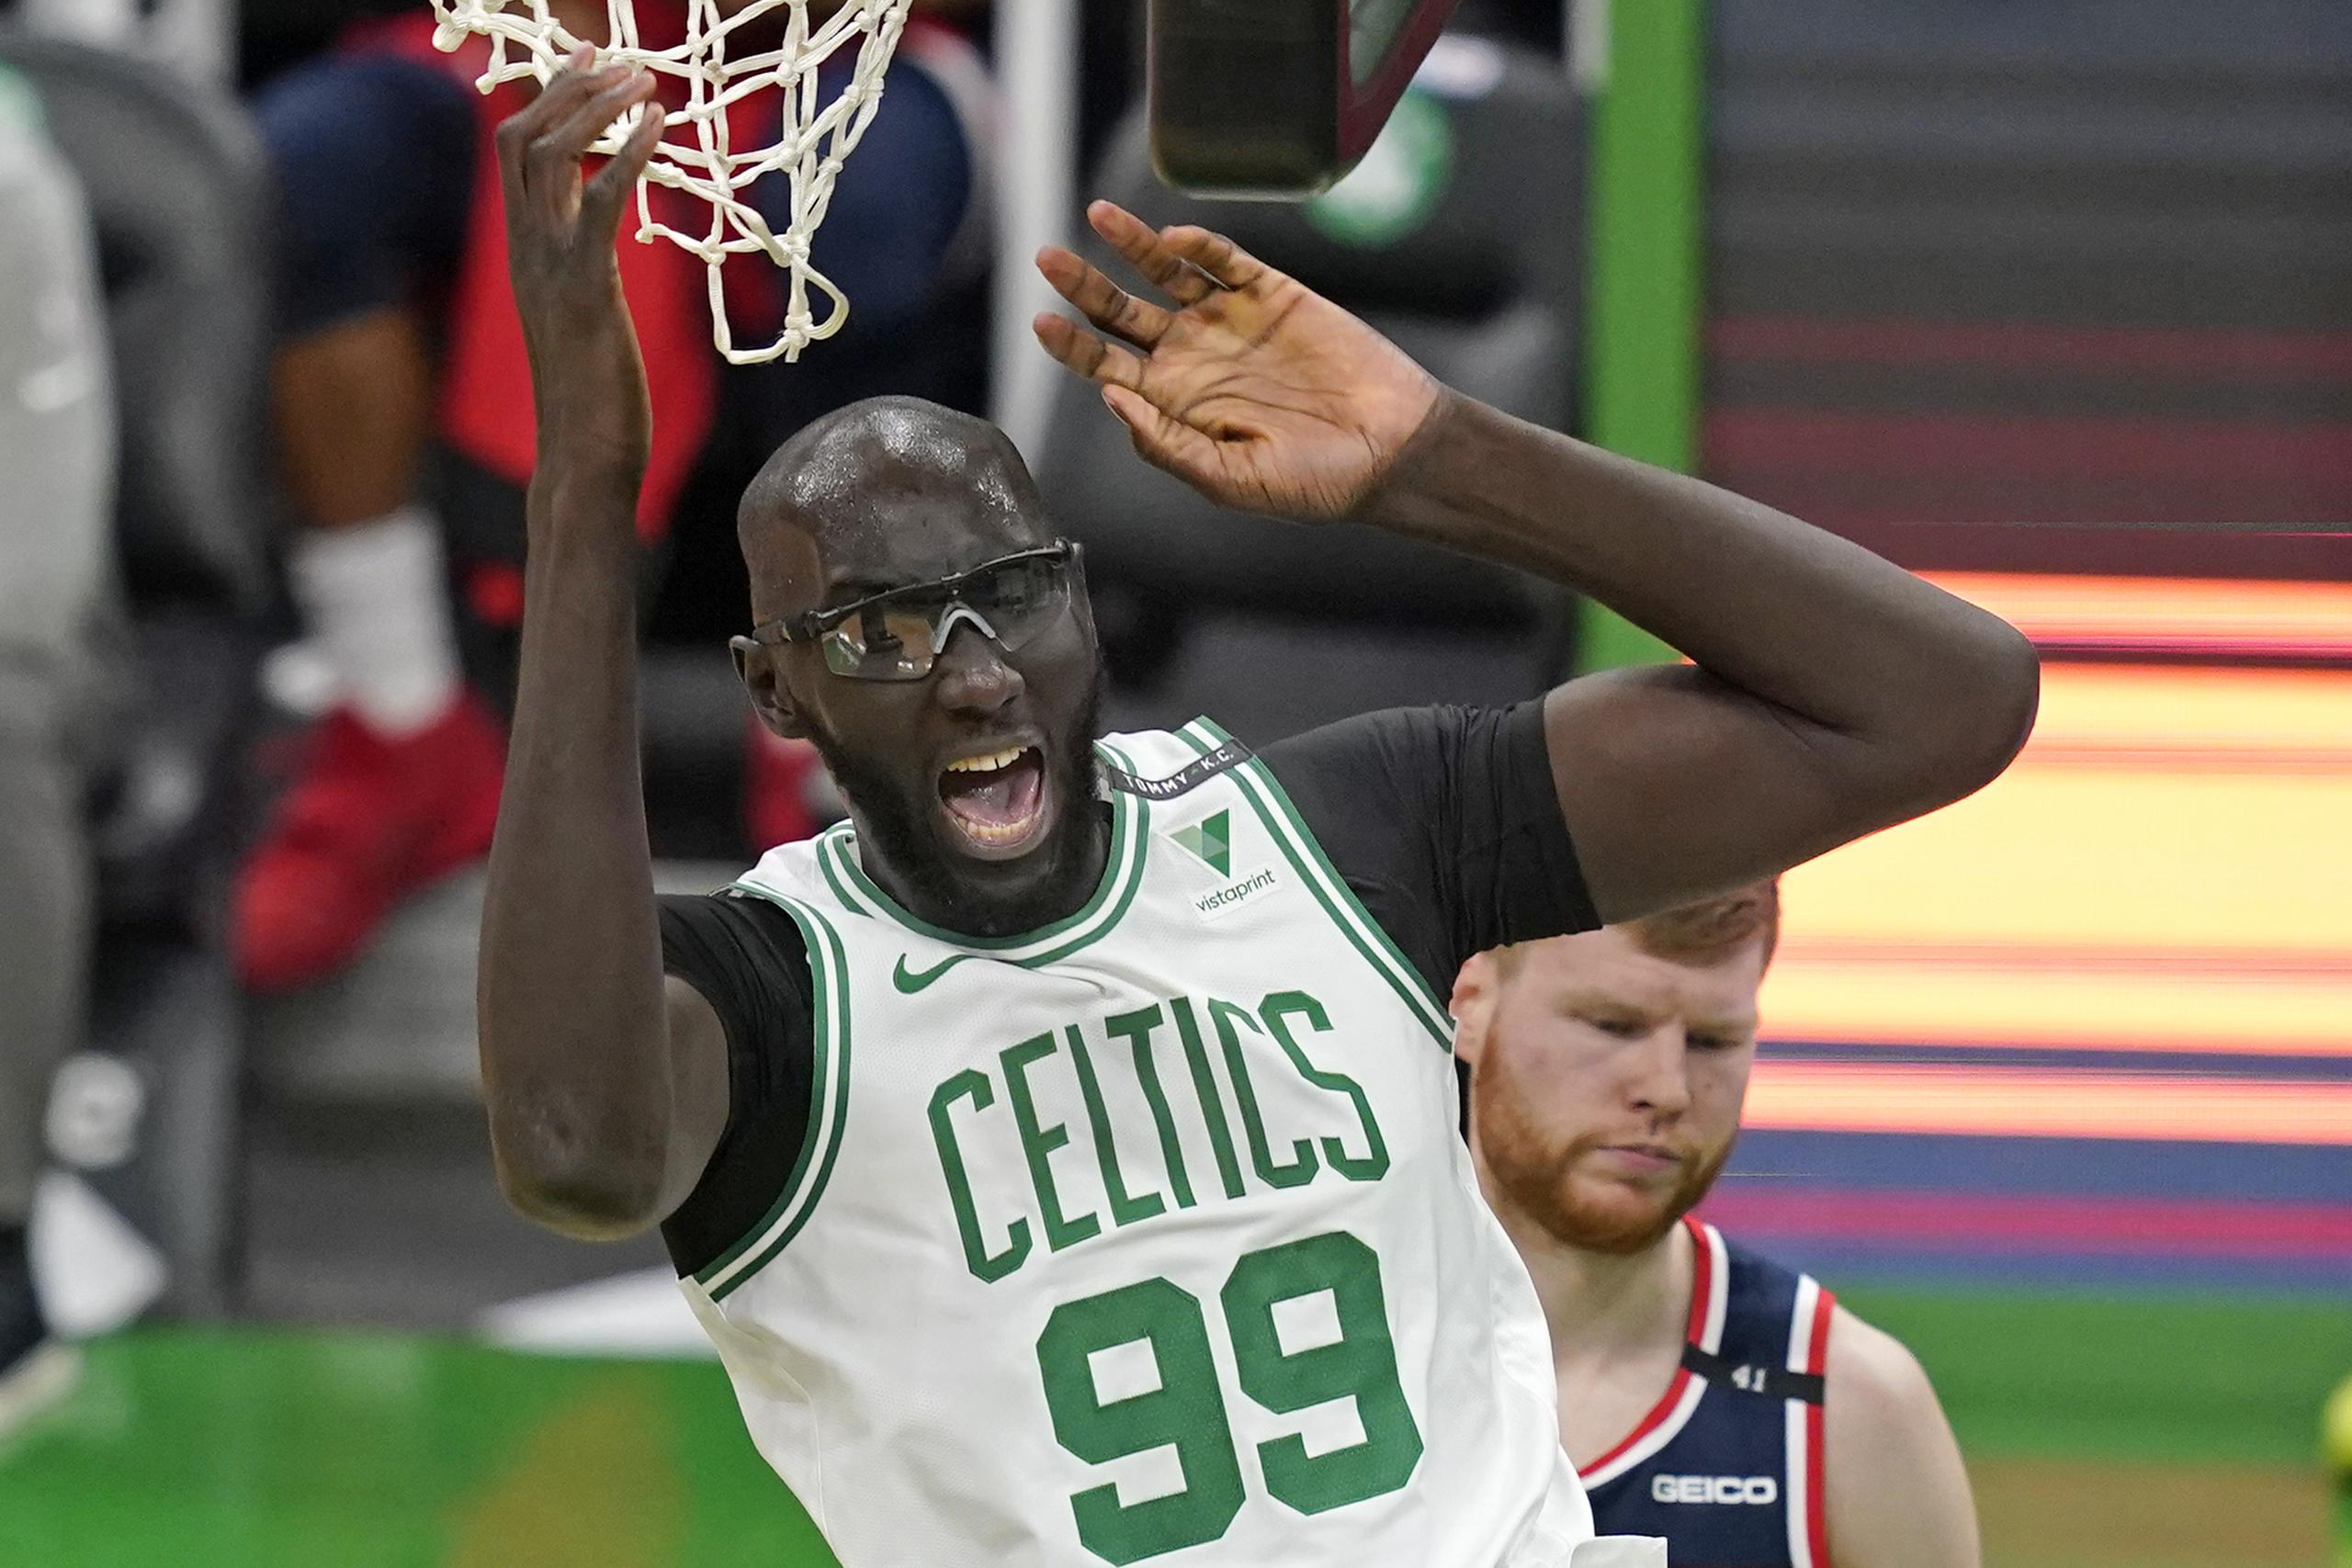 Tacko Fall, pívot de los Celtics de Boston, festeja tras lograr una volcada frente a Davis Bertans, de los Wizards de Washington, el viernes 8 de enero de 2021 (AP Foto/Elise Amendola)